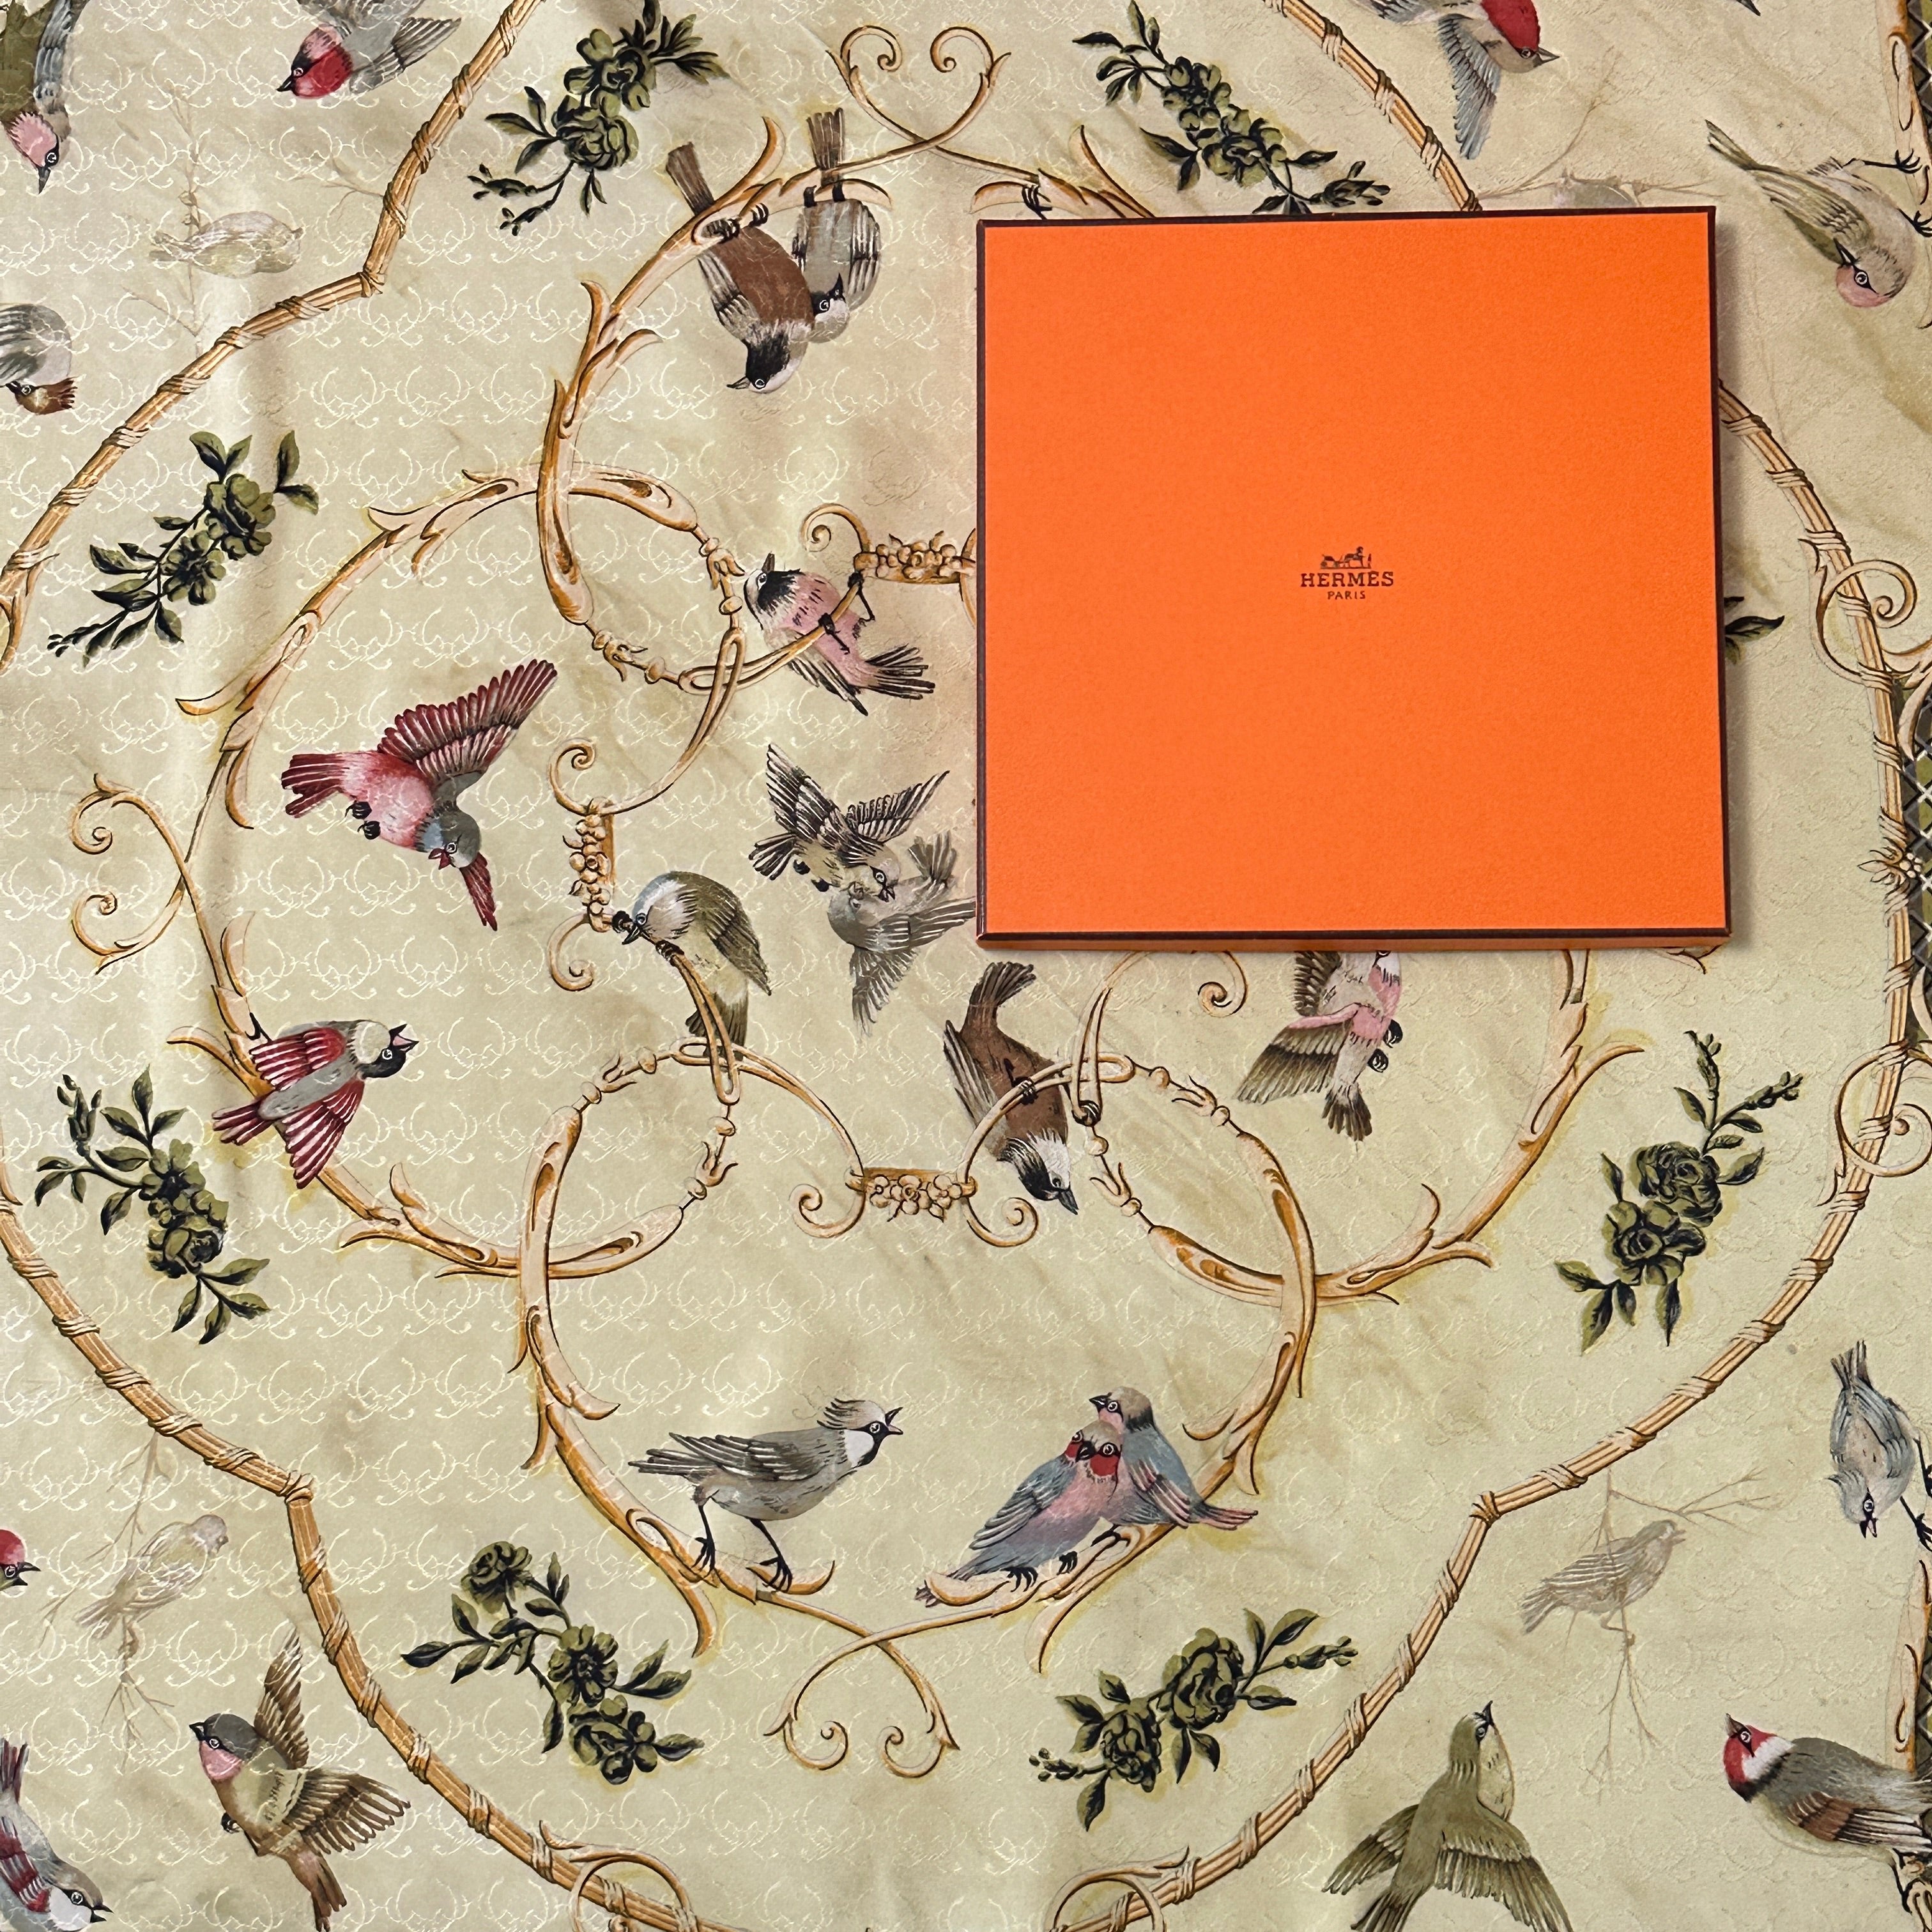 boite-hermes-orange-posée-au-centre-du-foulard